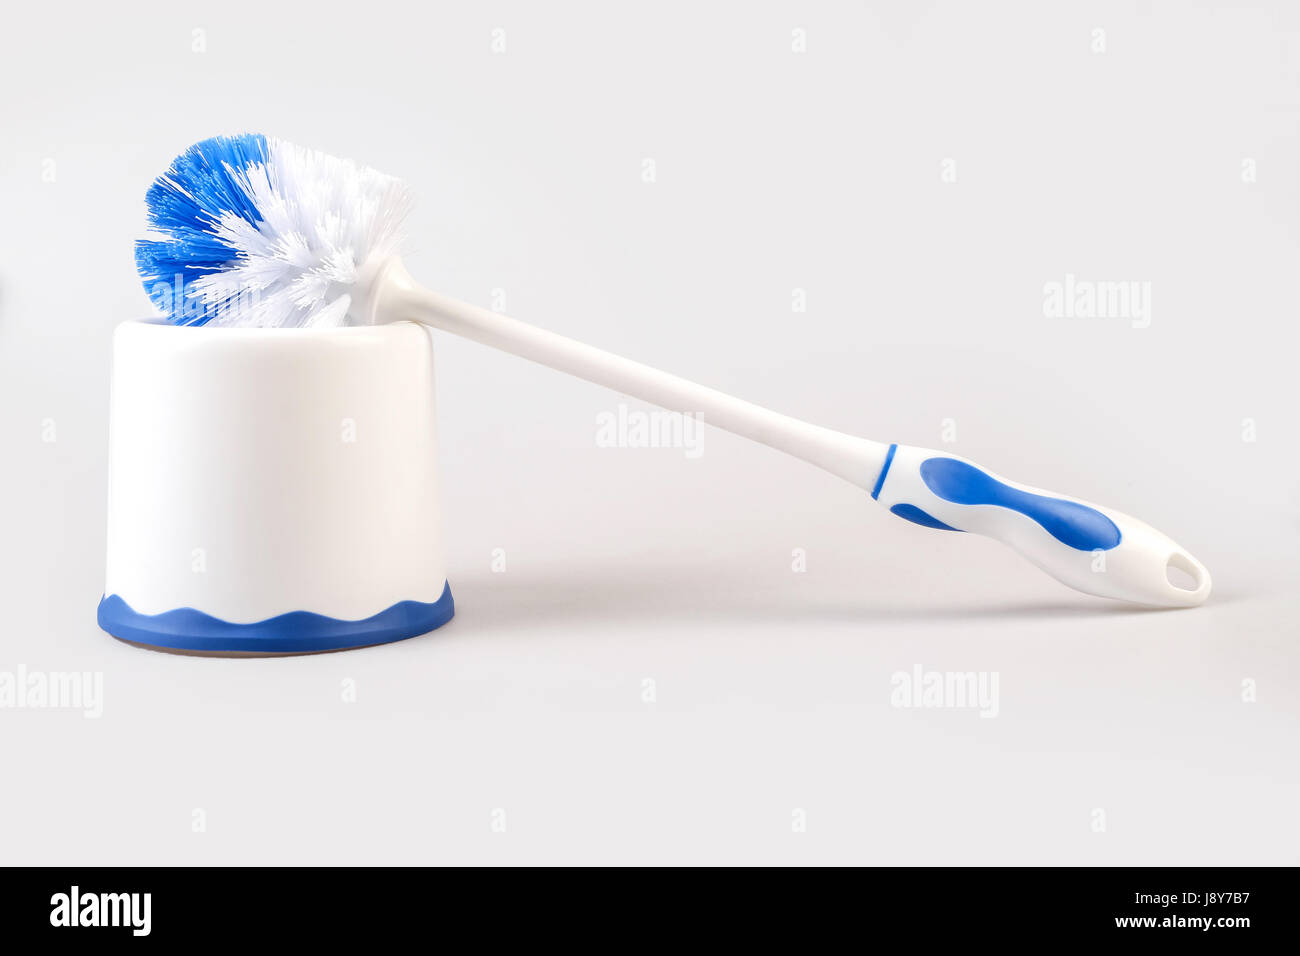 Plastic blue toilet brush isolated on white background Stock Photo